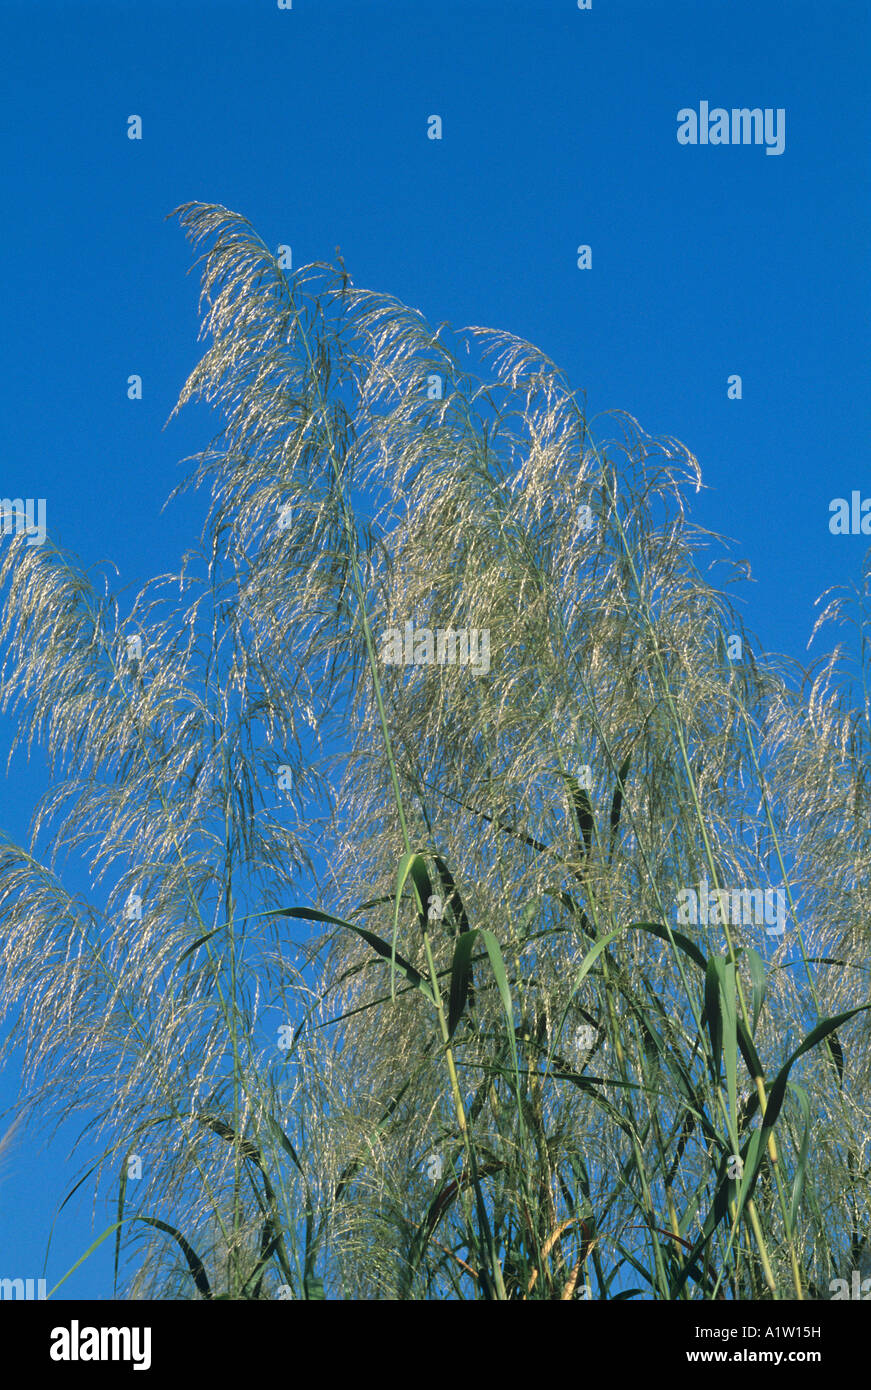 Pasto Guinea colonial Tanganyika hierba hierba Panicum maximum floración céspedes contra el cielo azul Foto de stock